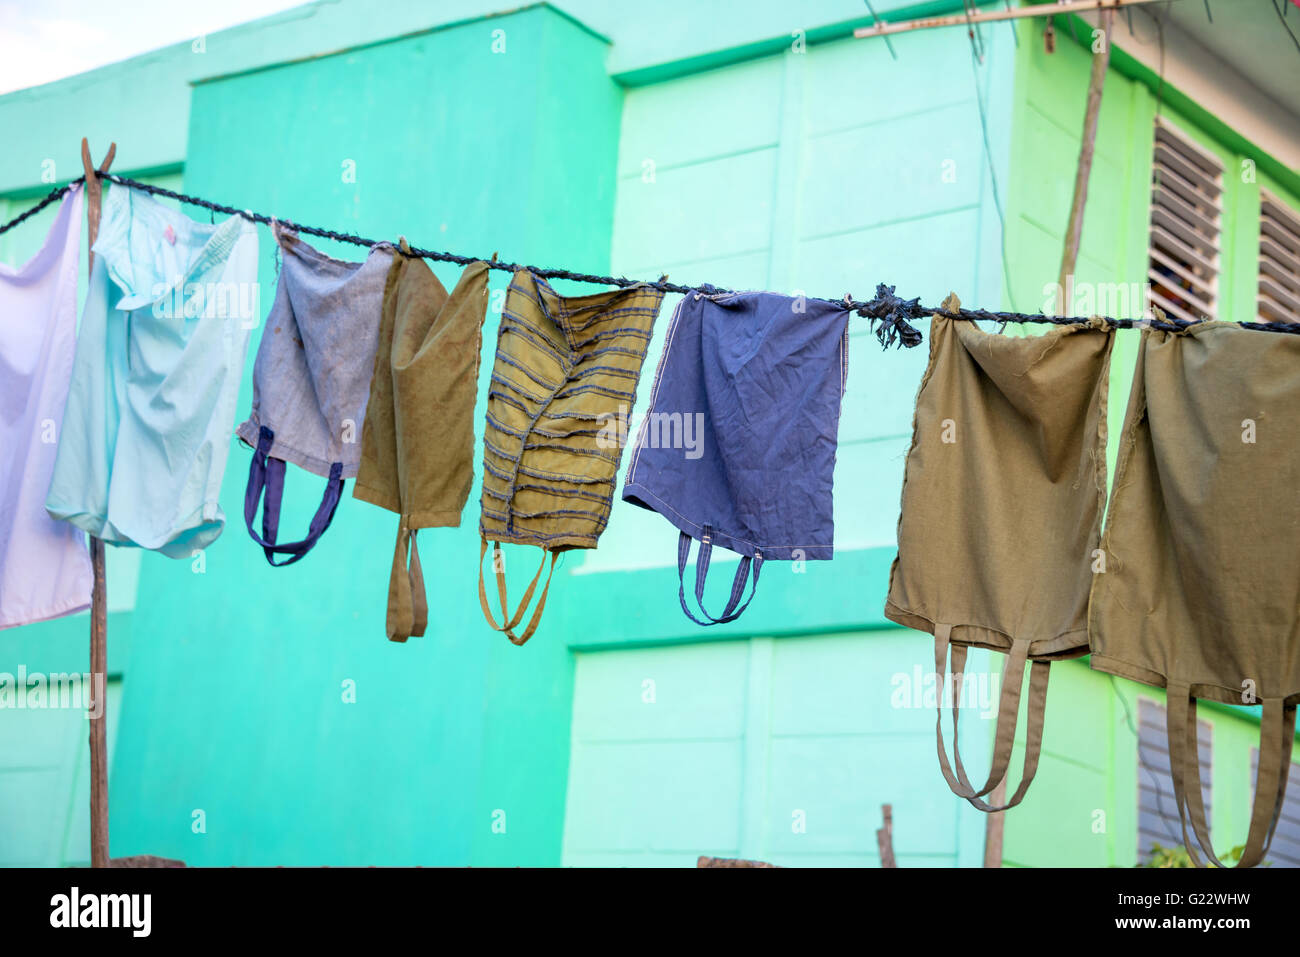 Servizio lavanderia appeso a una fune, Cuba Foto Stock